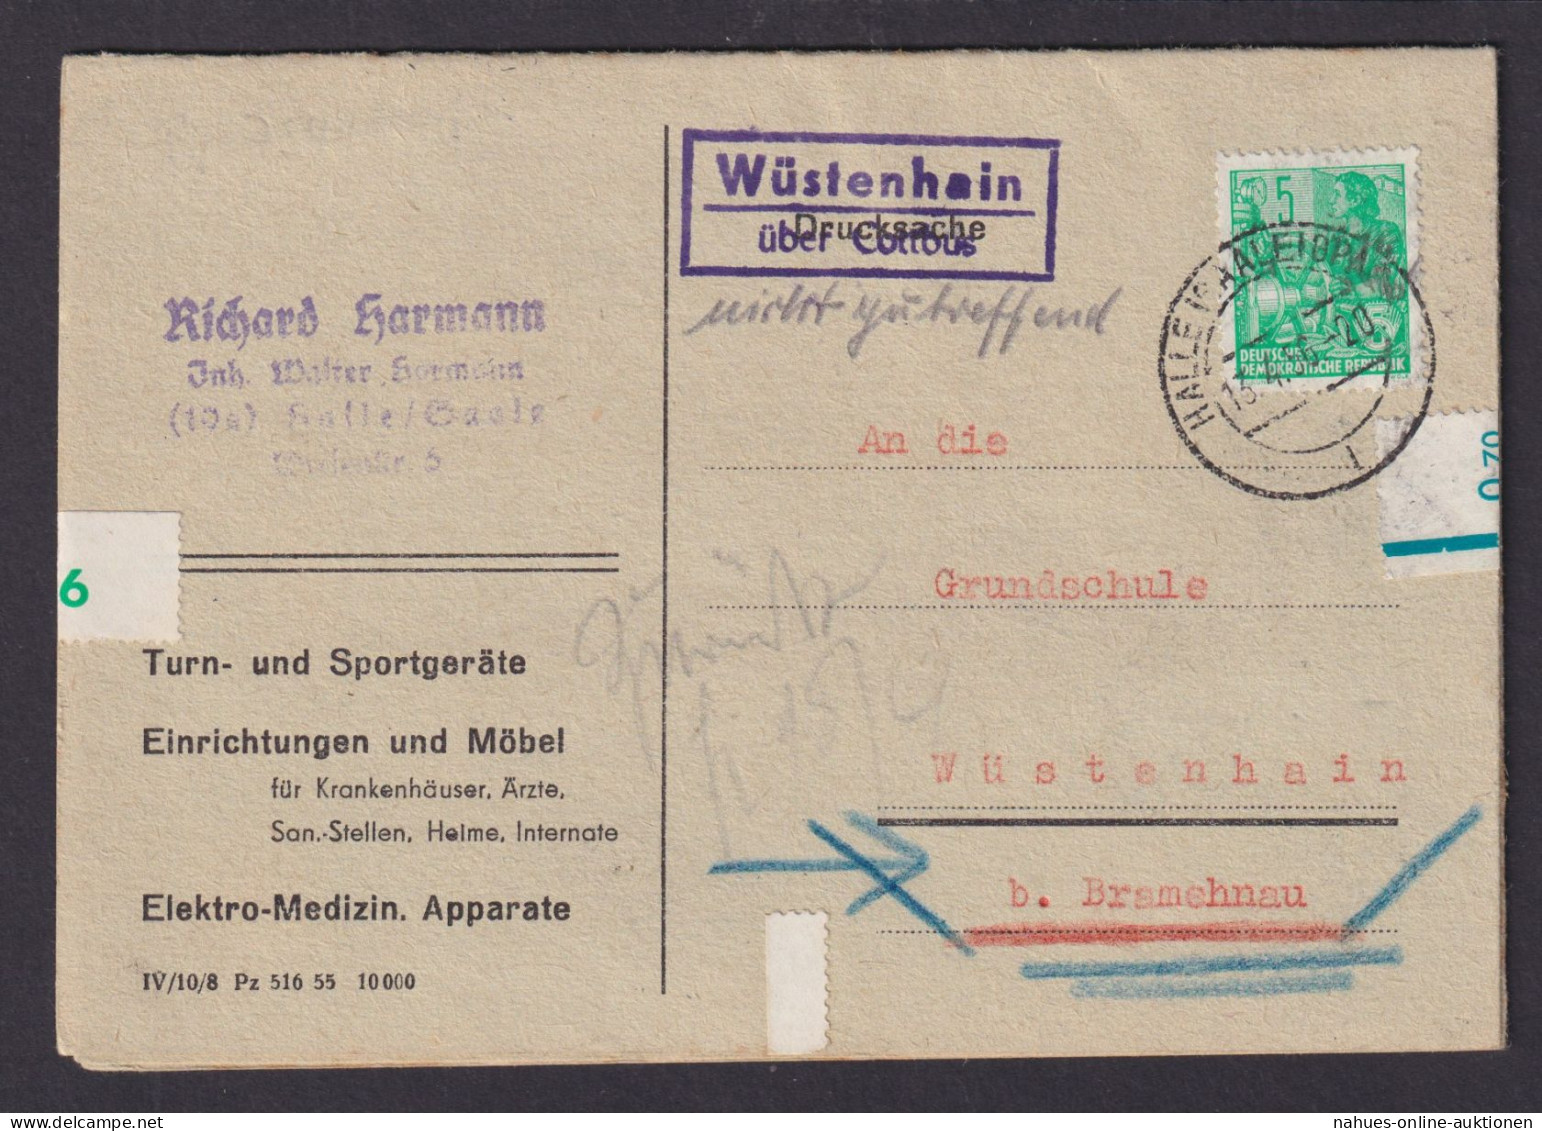 Wüstenhain über Cottbus Brandenburg DDR Bestellkarte Landpoststempel N. Bramenau - Storia Postale